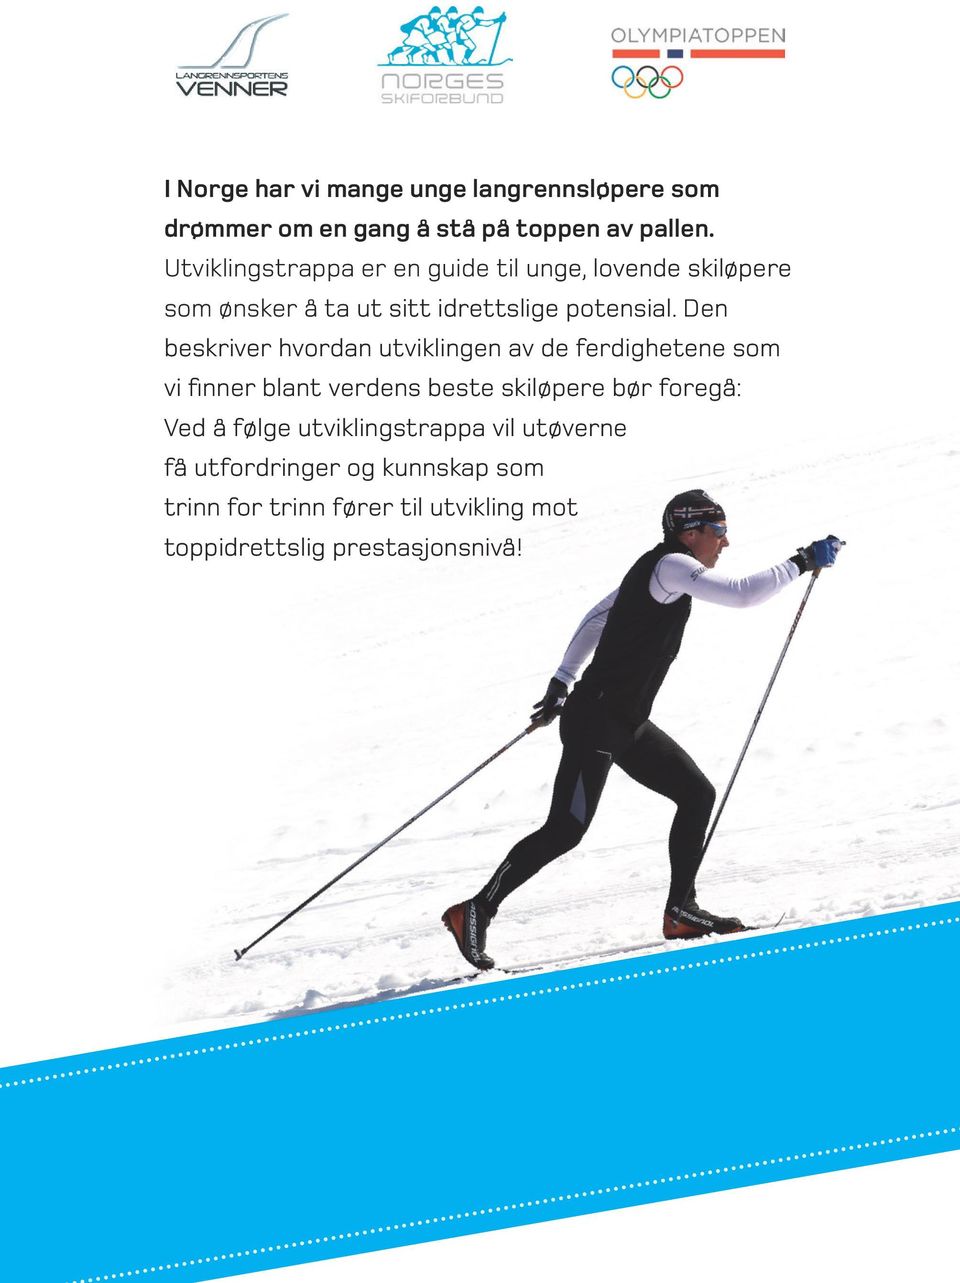 Den beskriver hvordan utviklingen av de ferdighetene som vi finner blant verdens beste skiløpere bør foregå: Ved